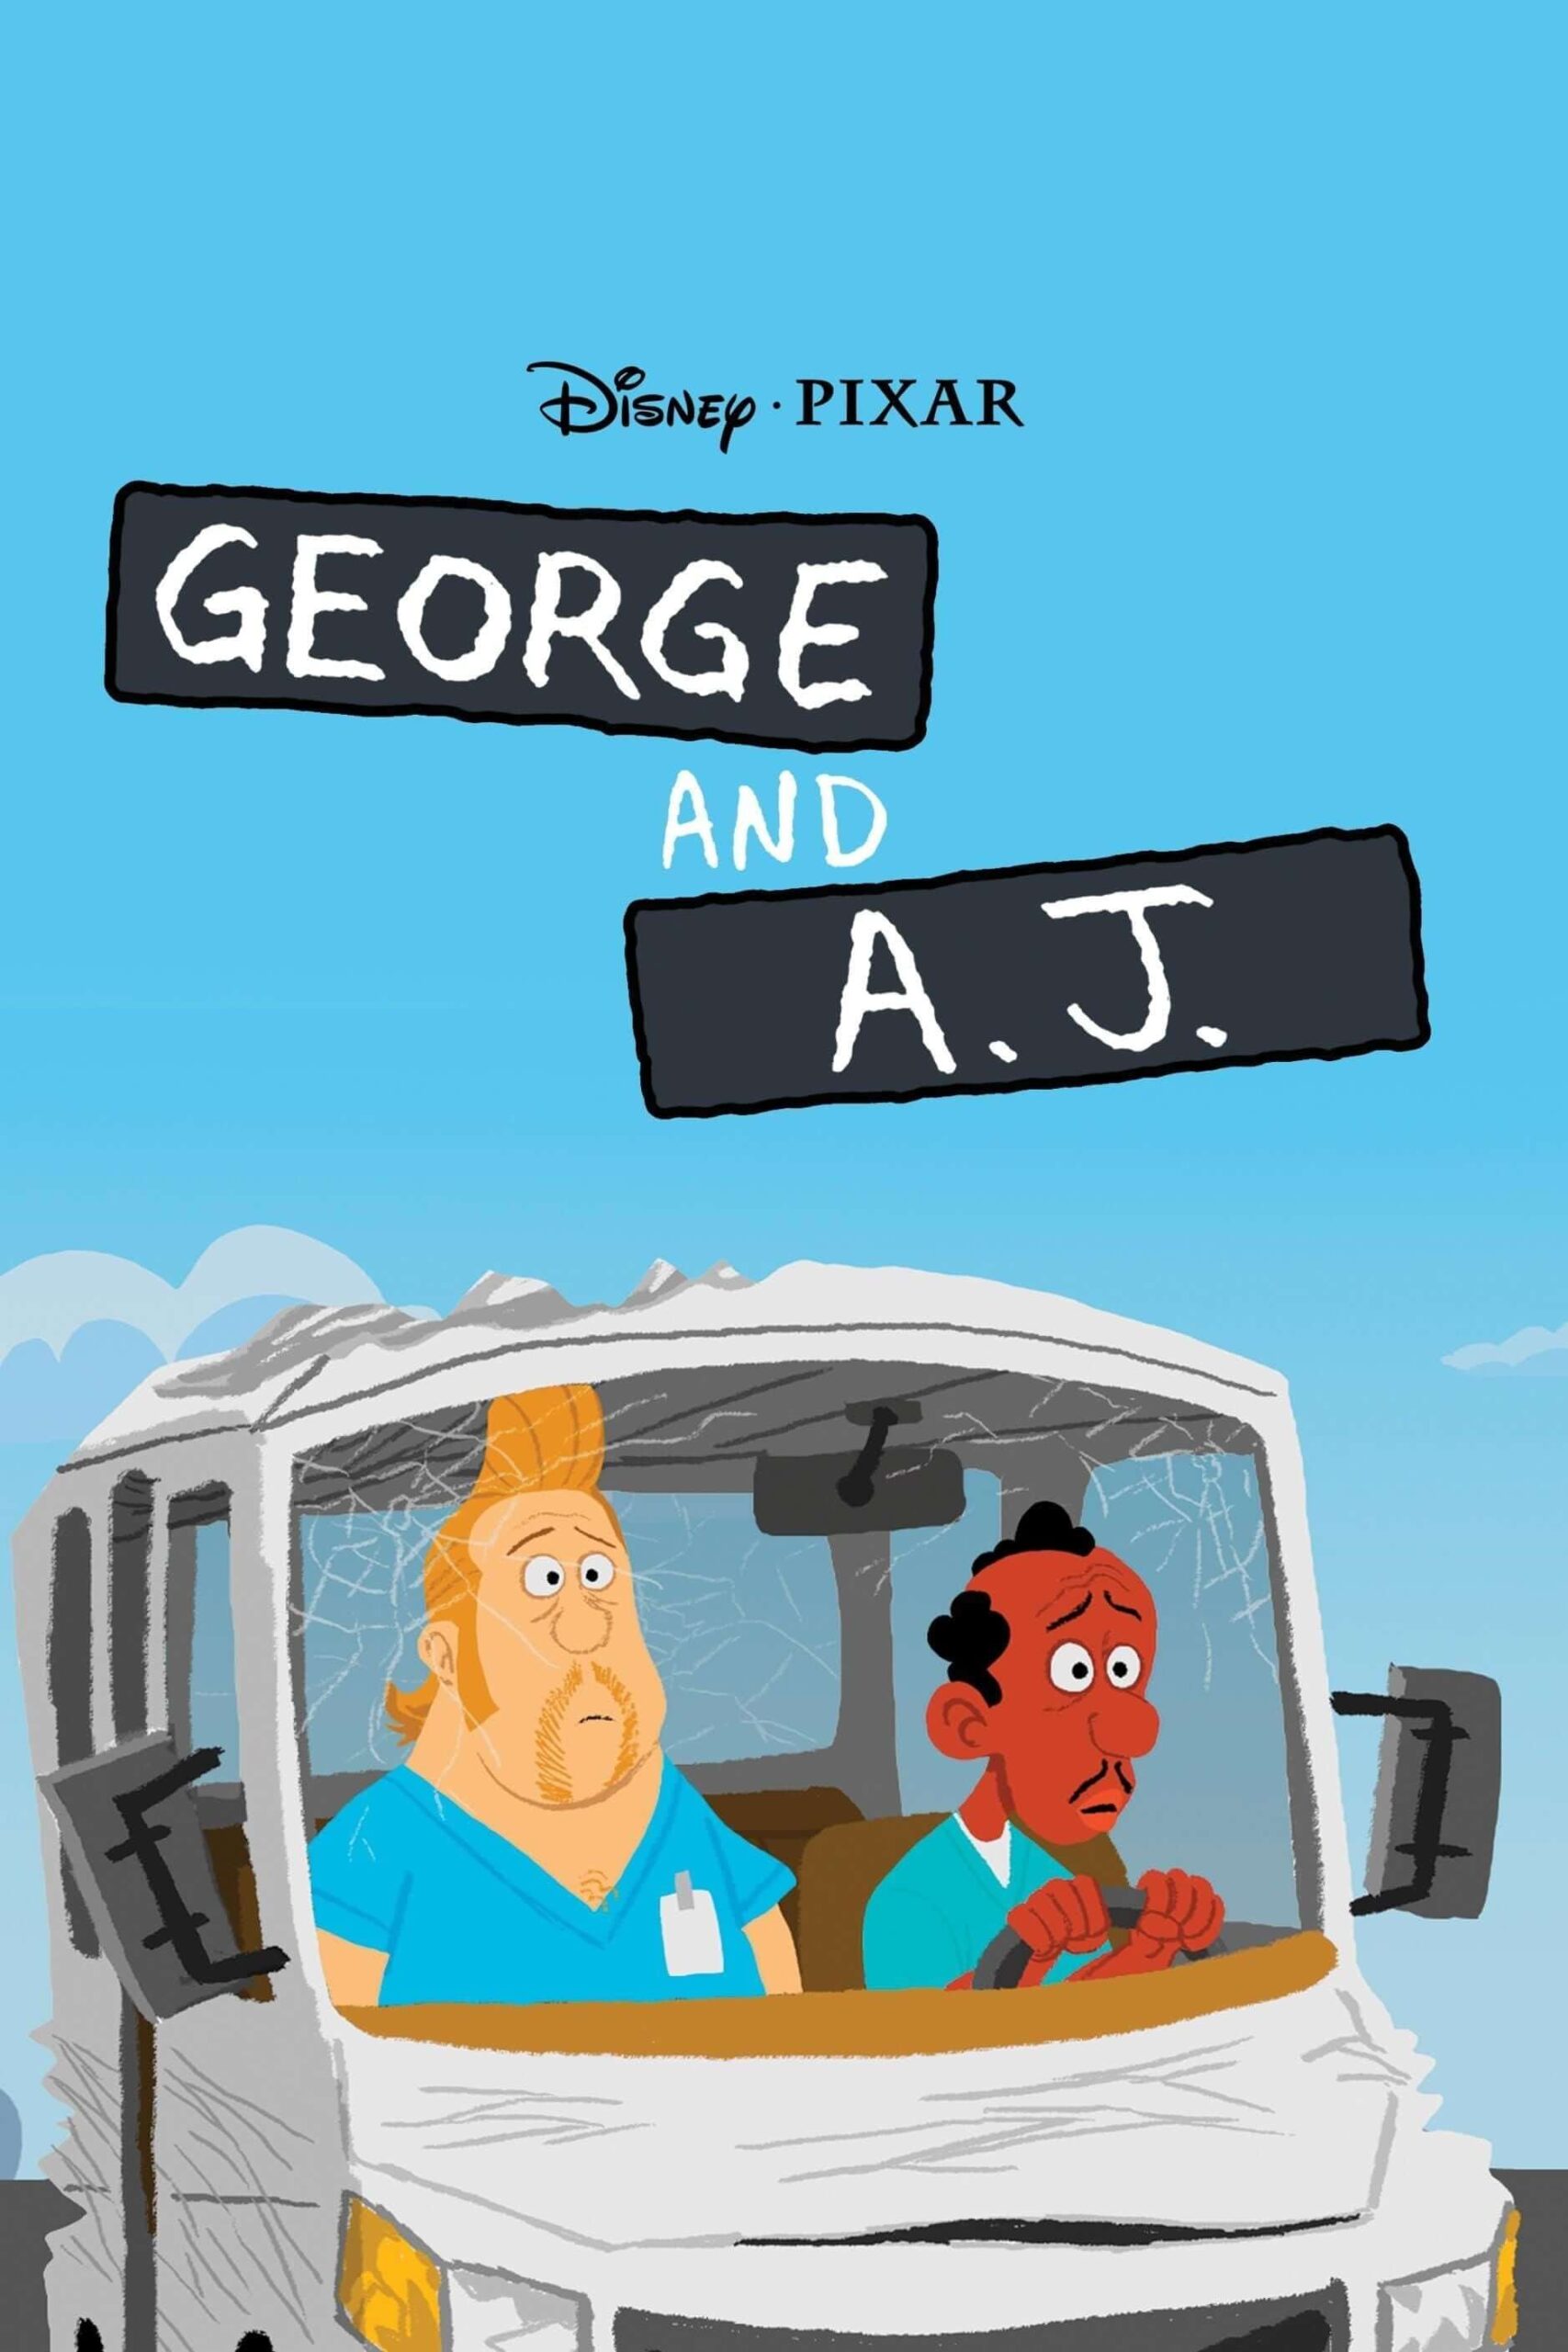 جرج و ای.جی.(George and A.J.)